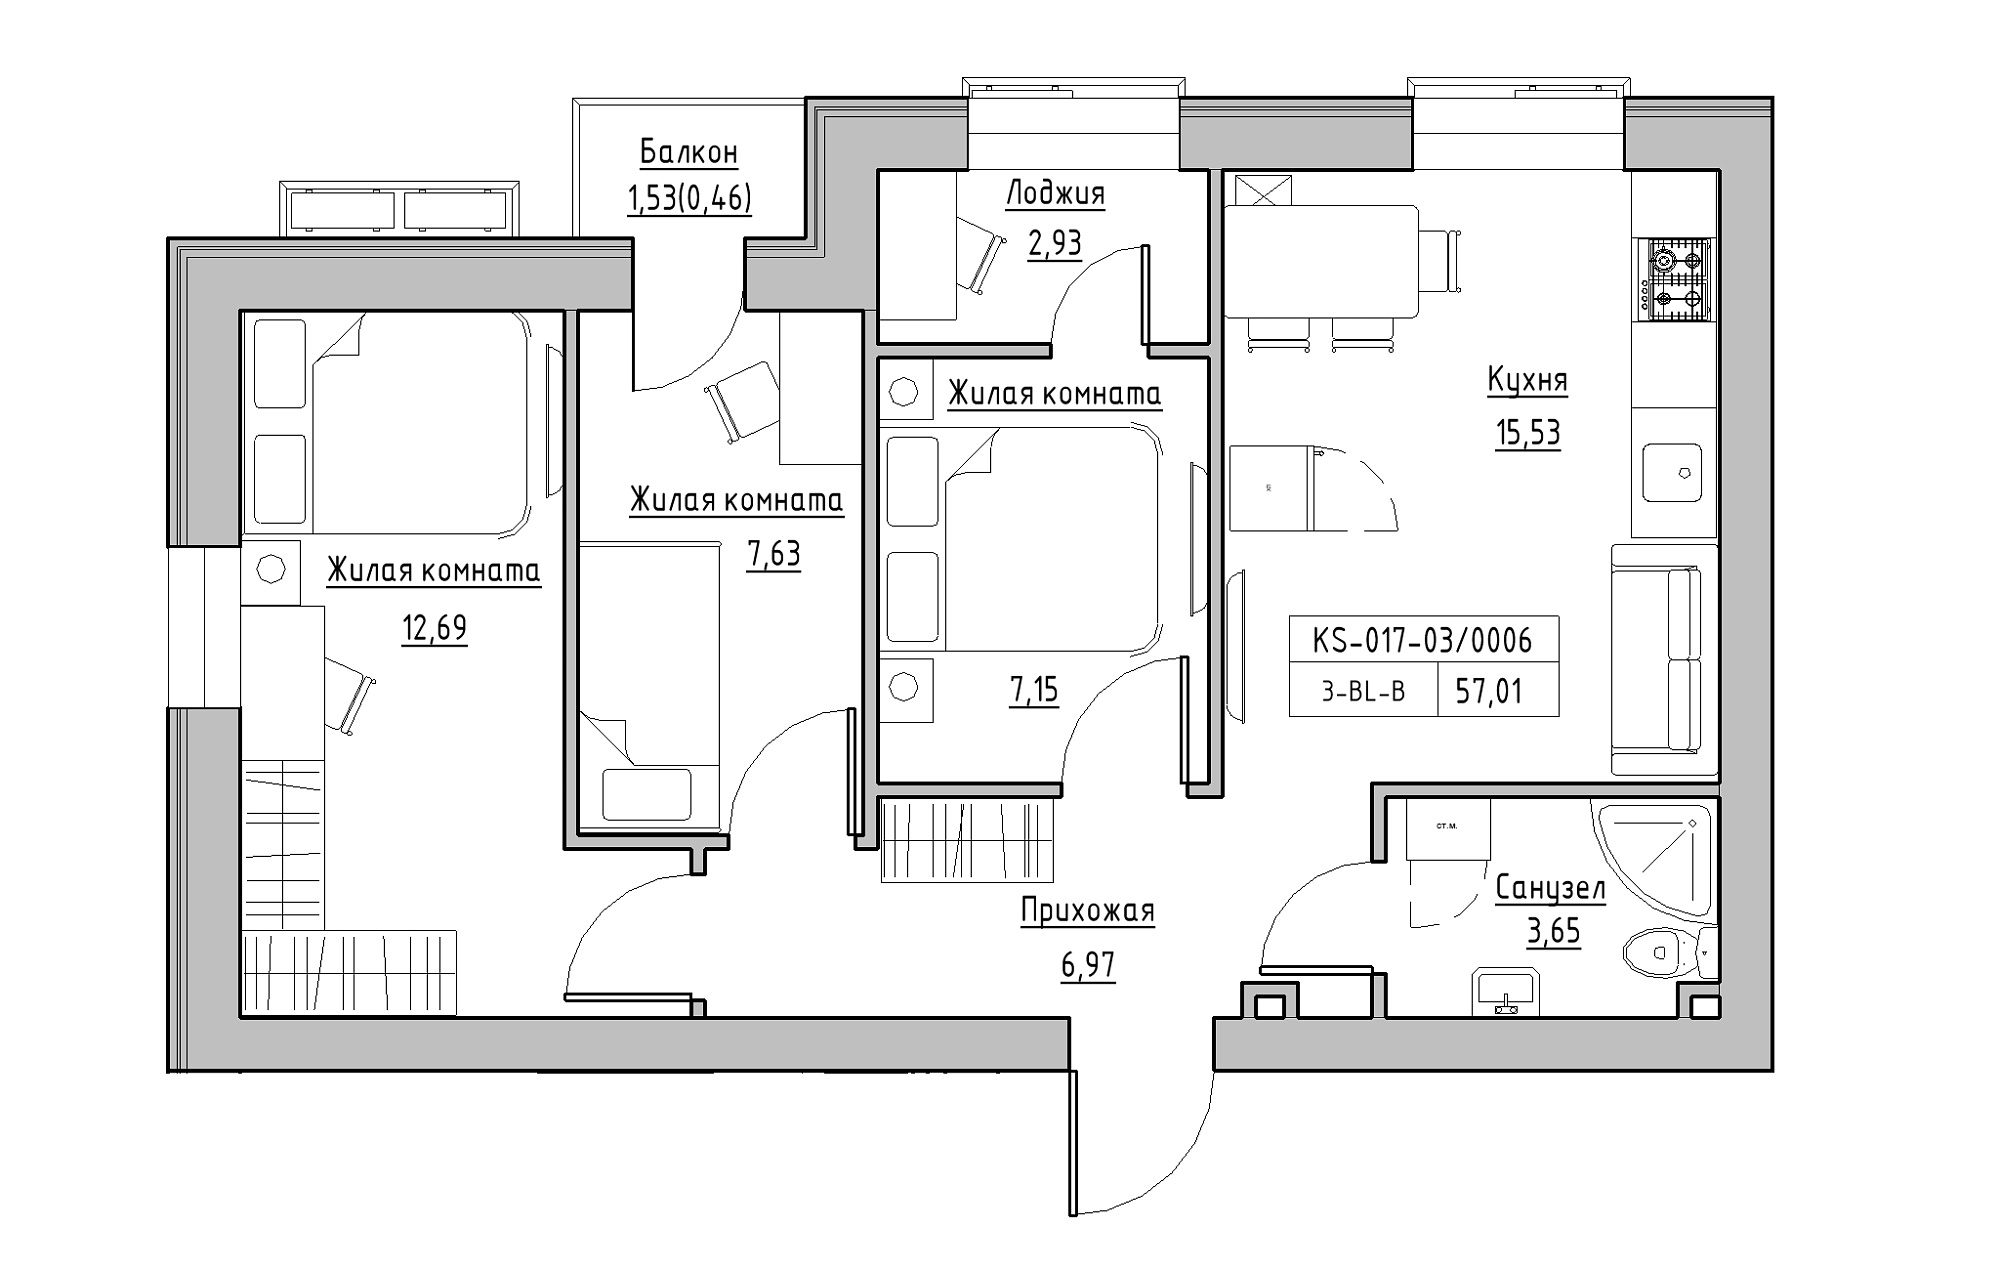 Планування 3-к квартира площею 57.01м2, KS-017-03/0006.